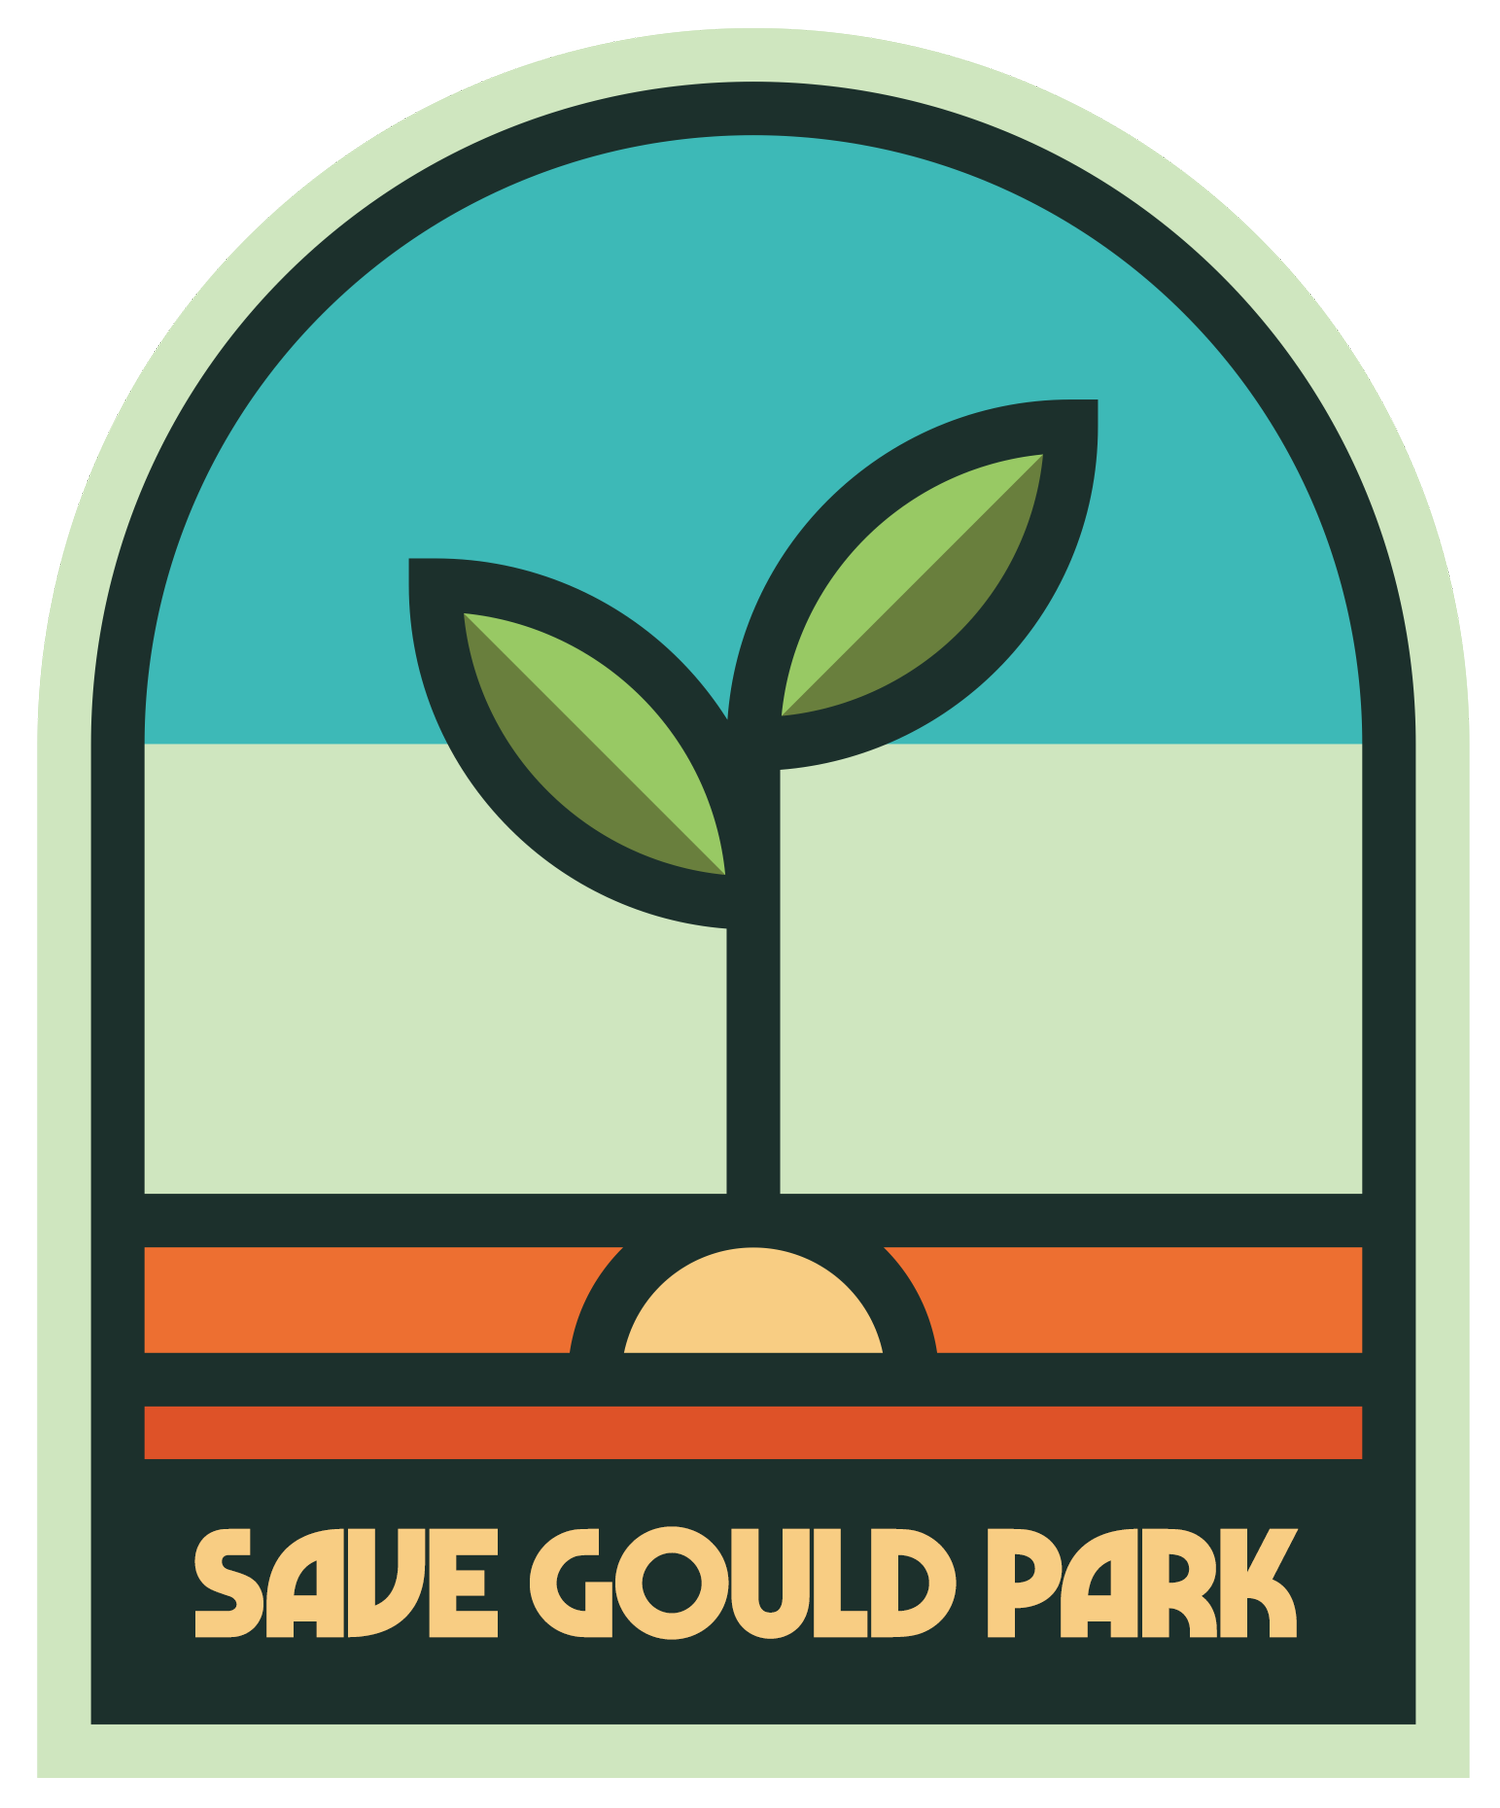 Build Gould Park